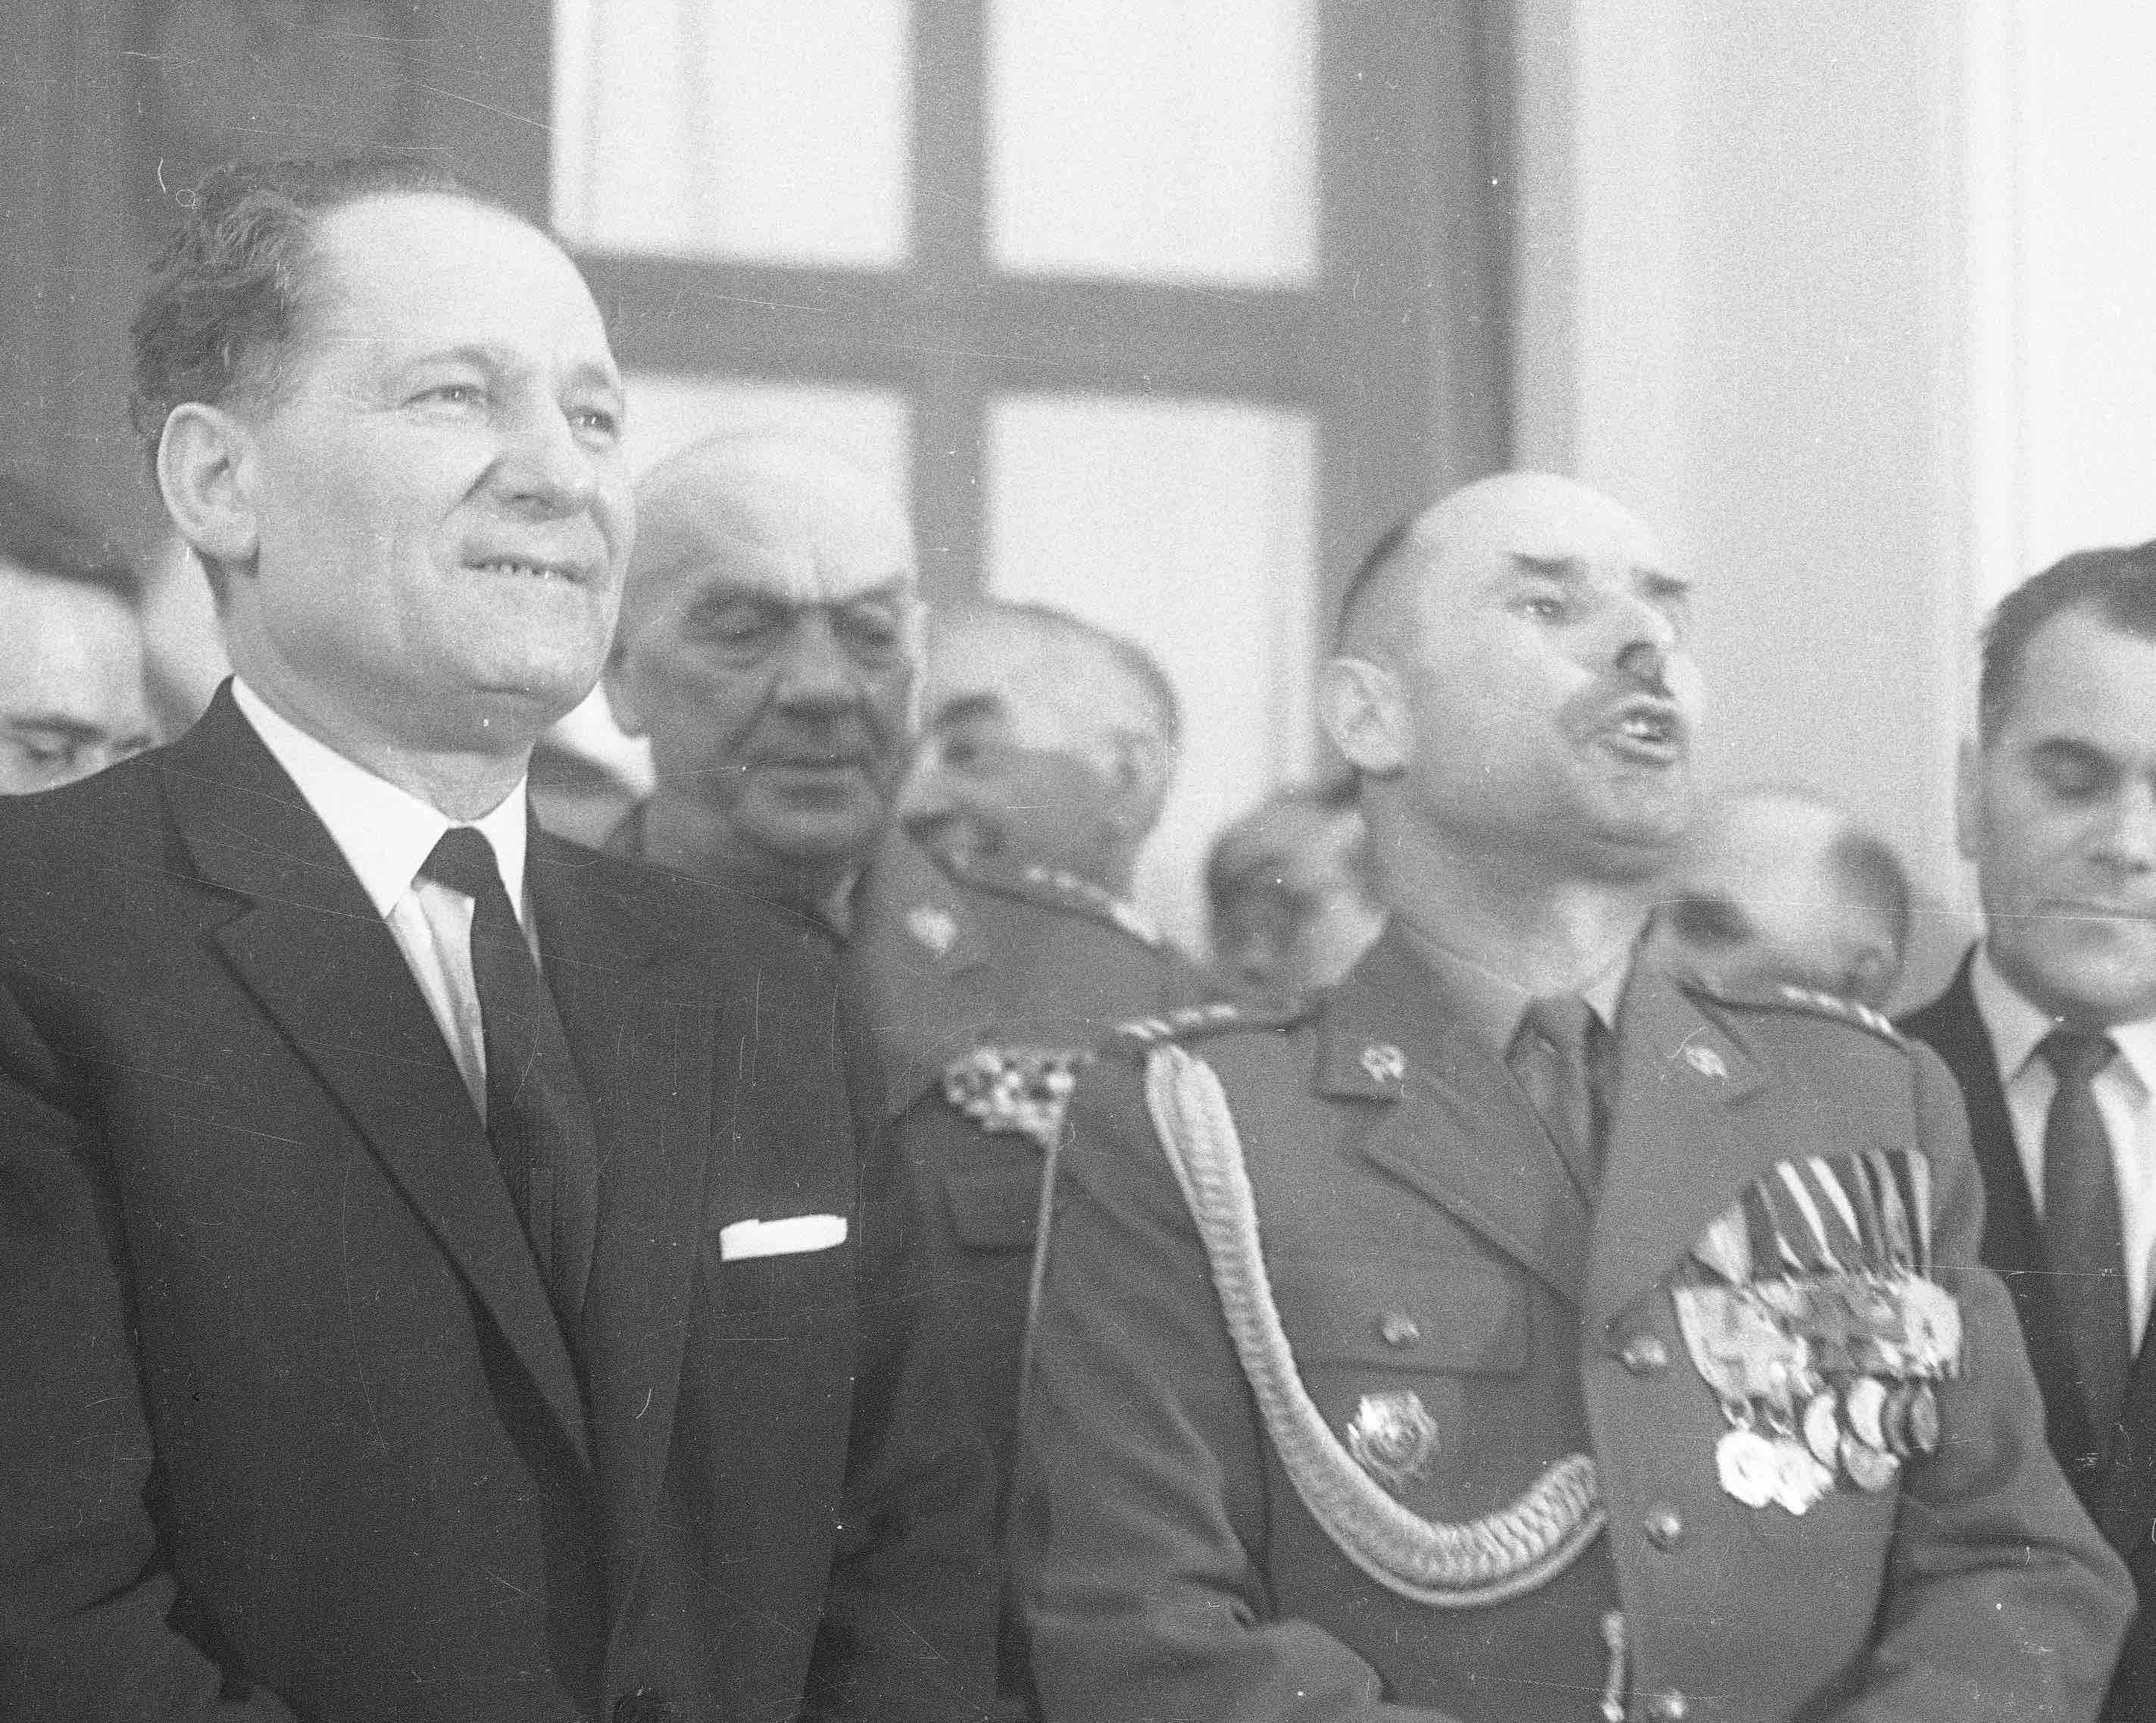 Mieczysław Moczar w garniturze stoi obok oficera w mundurze z medalami.